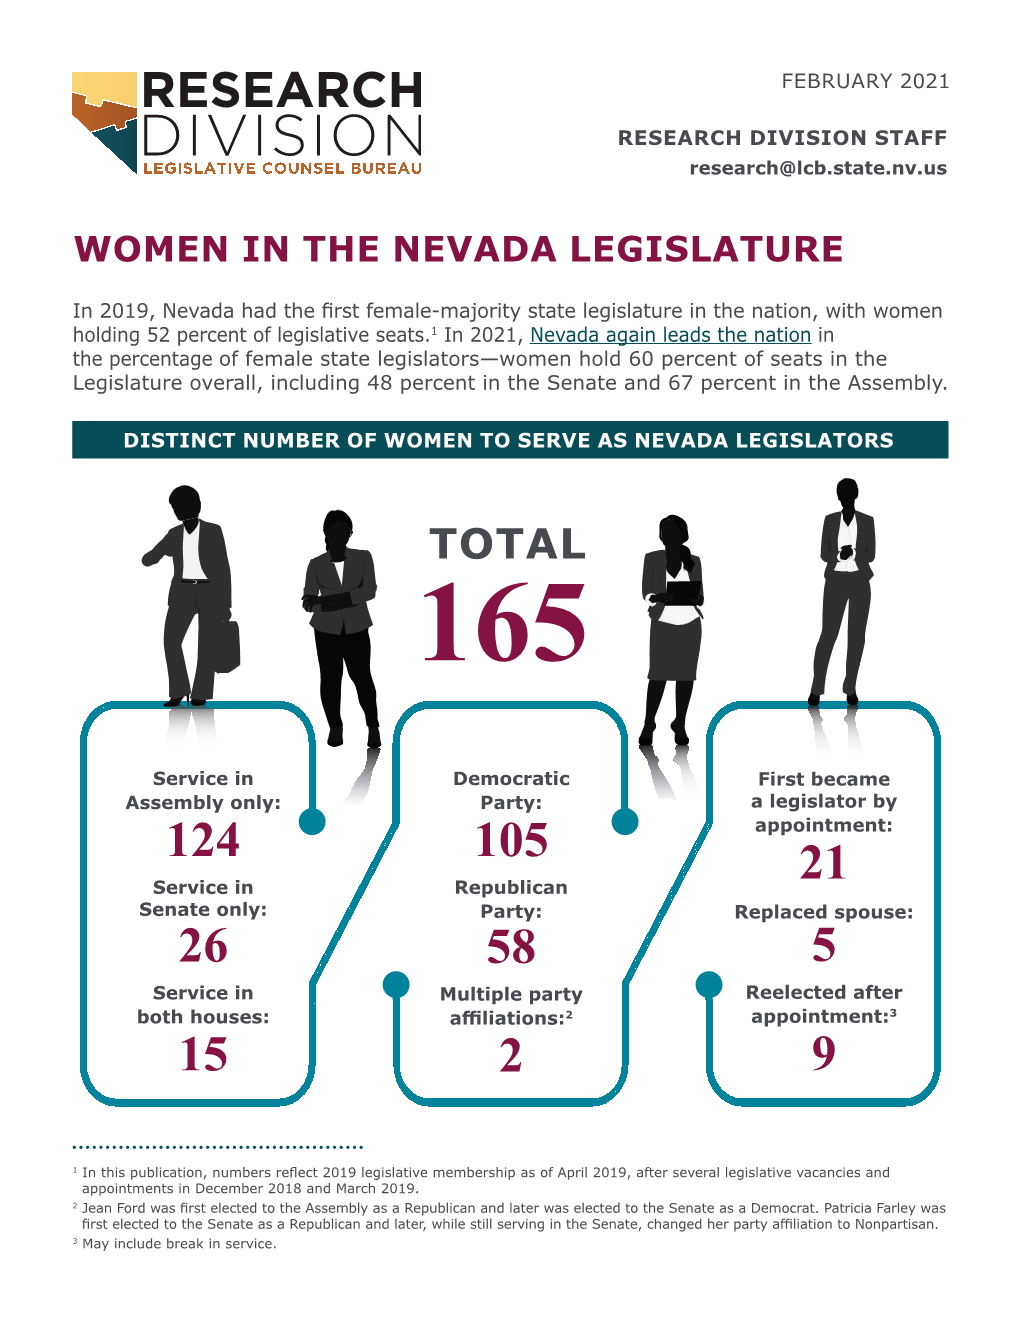 Women in the Nevada Legislature